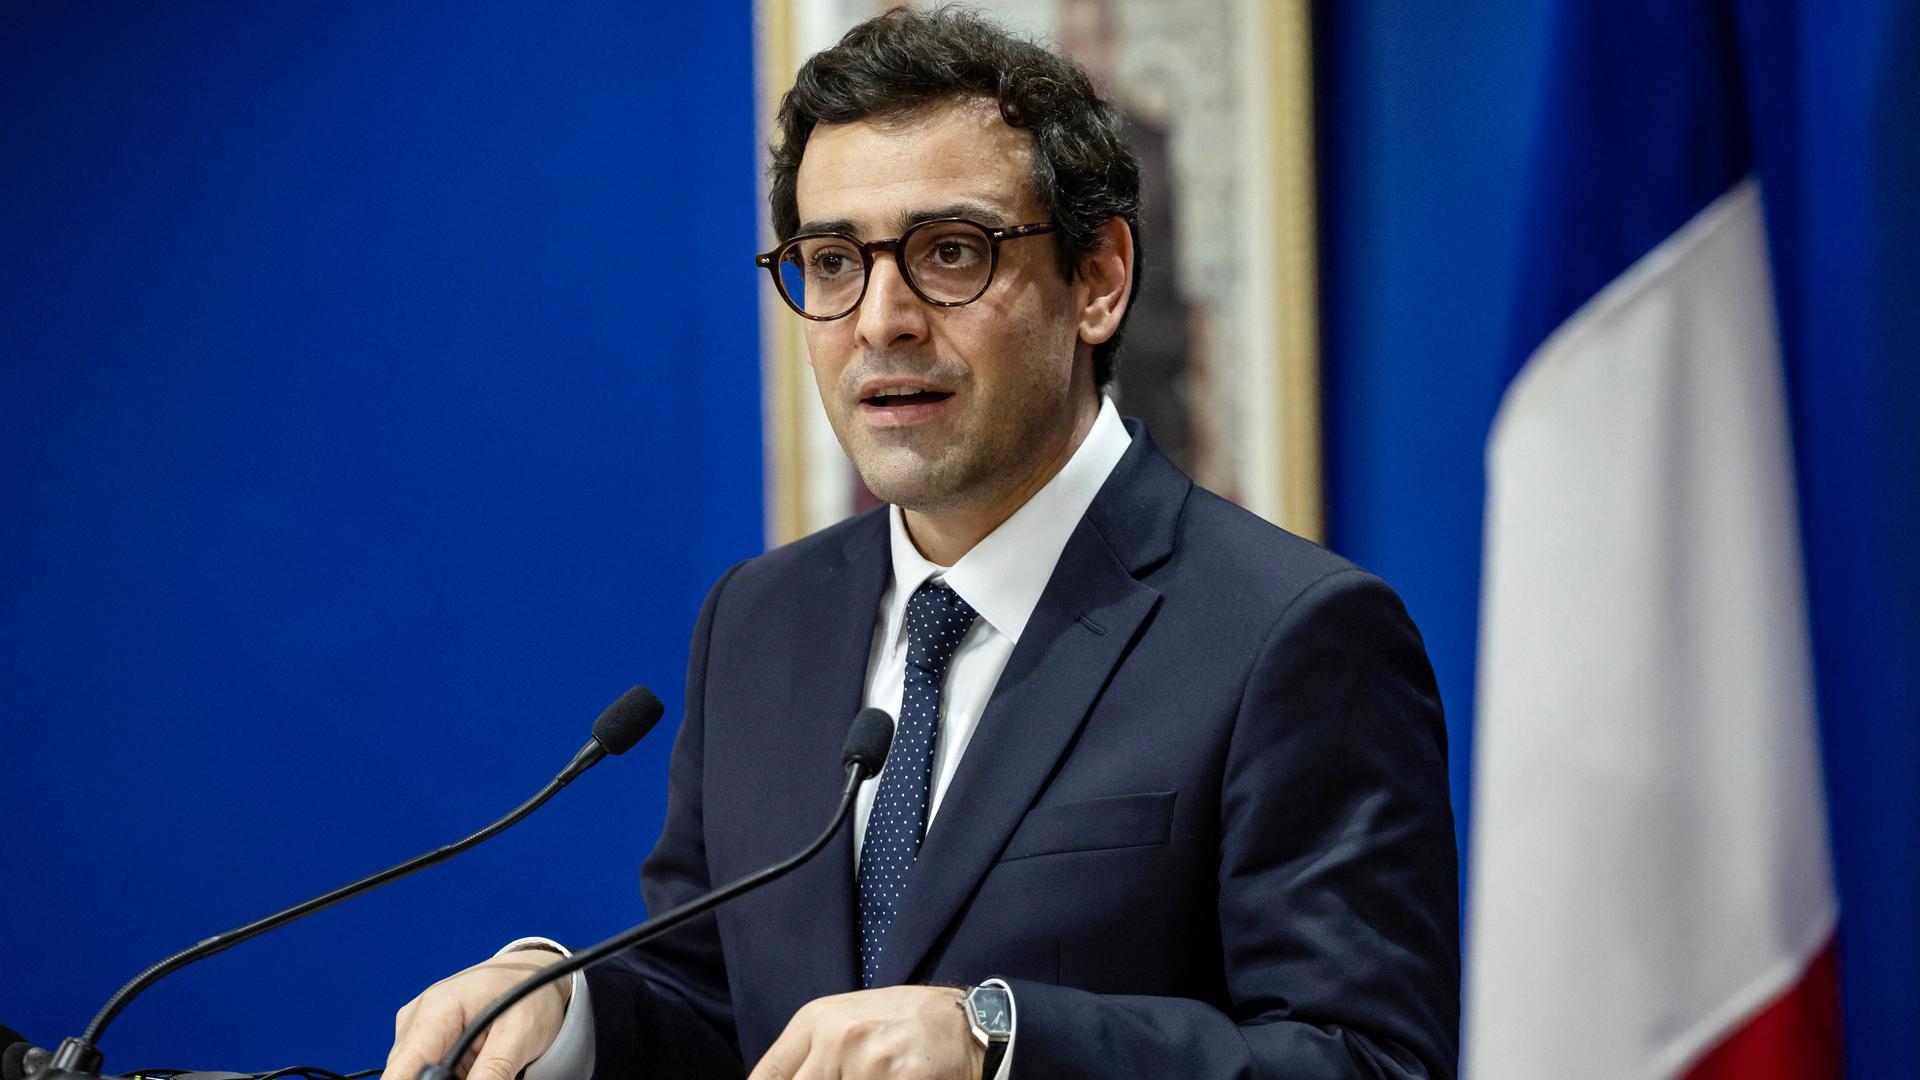 Der französische Außenminister Séjourné spricht an einem Rednerpult.